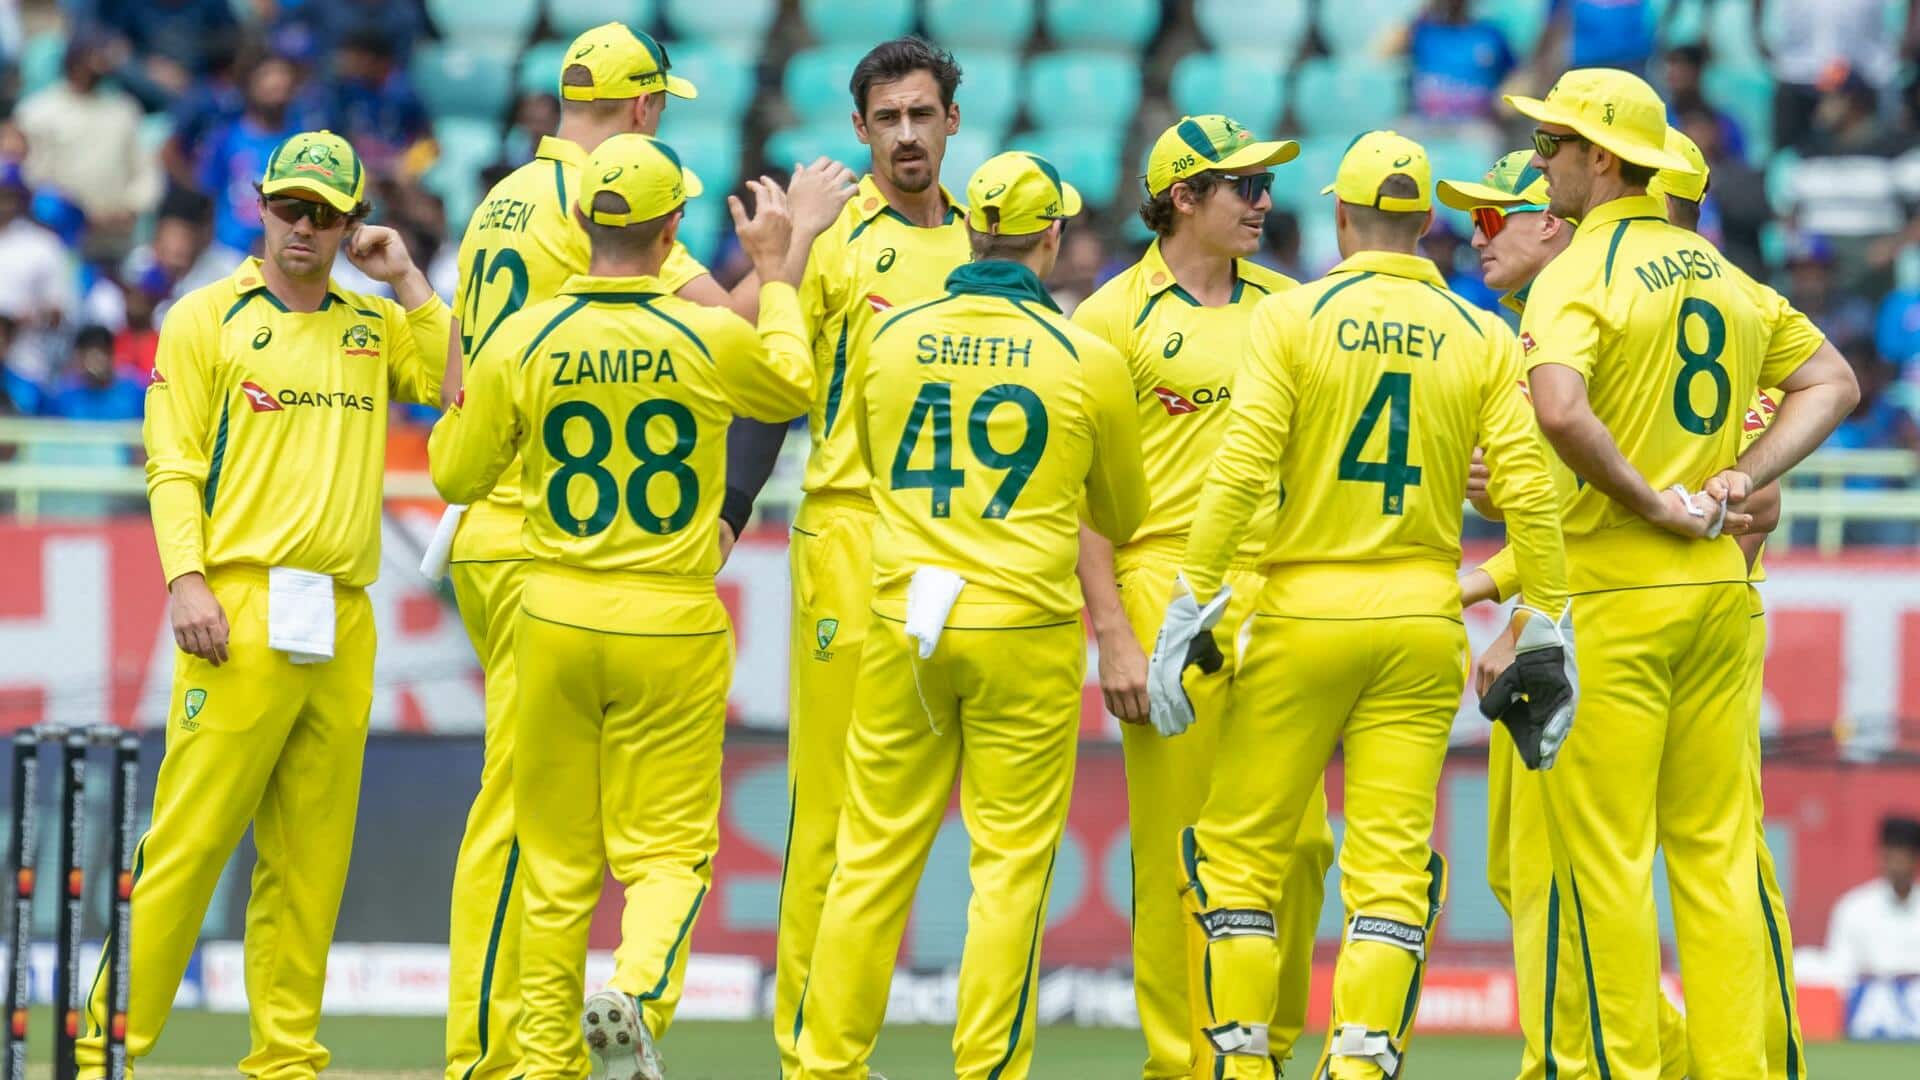 ऑस्ट्रेलिया के तेज गेंदबाजों का जलवा, भारत के खिलाफ हासिल की बड़ी उपलब्धि